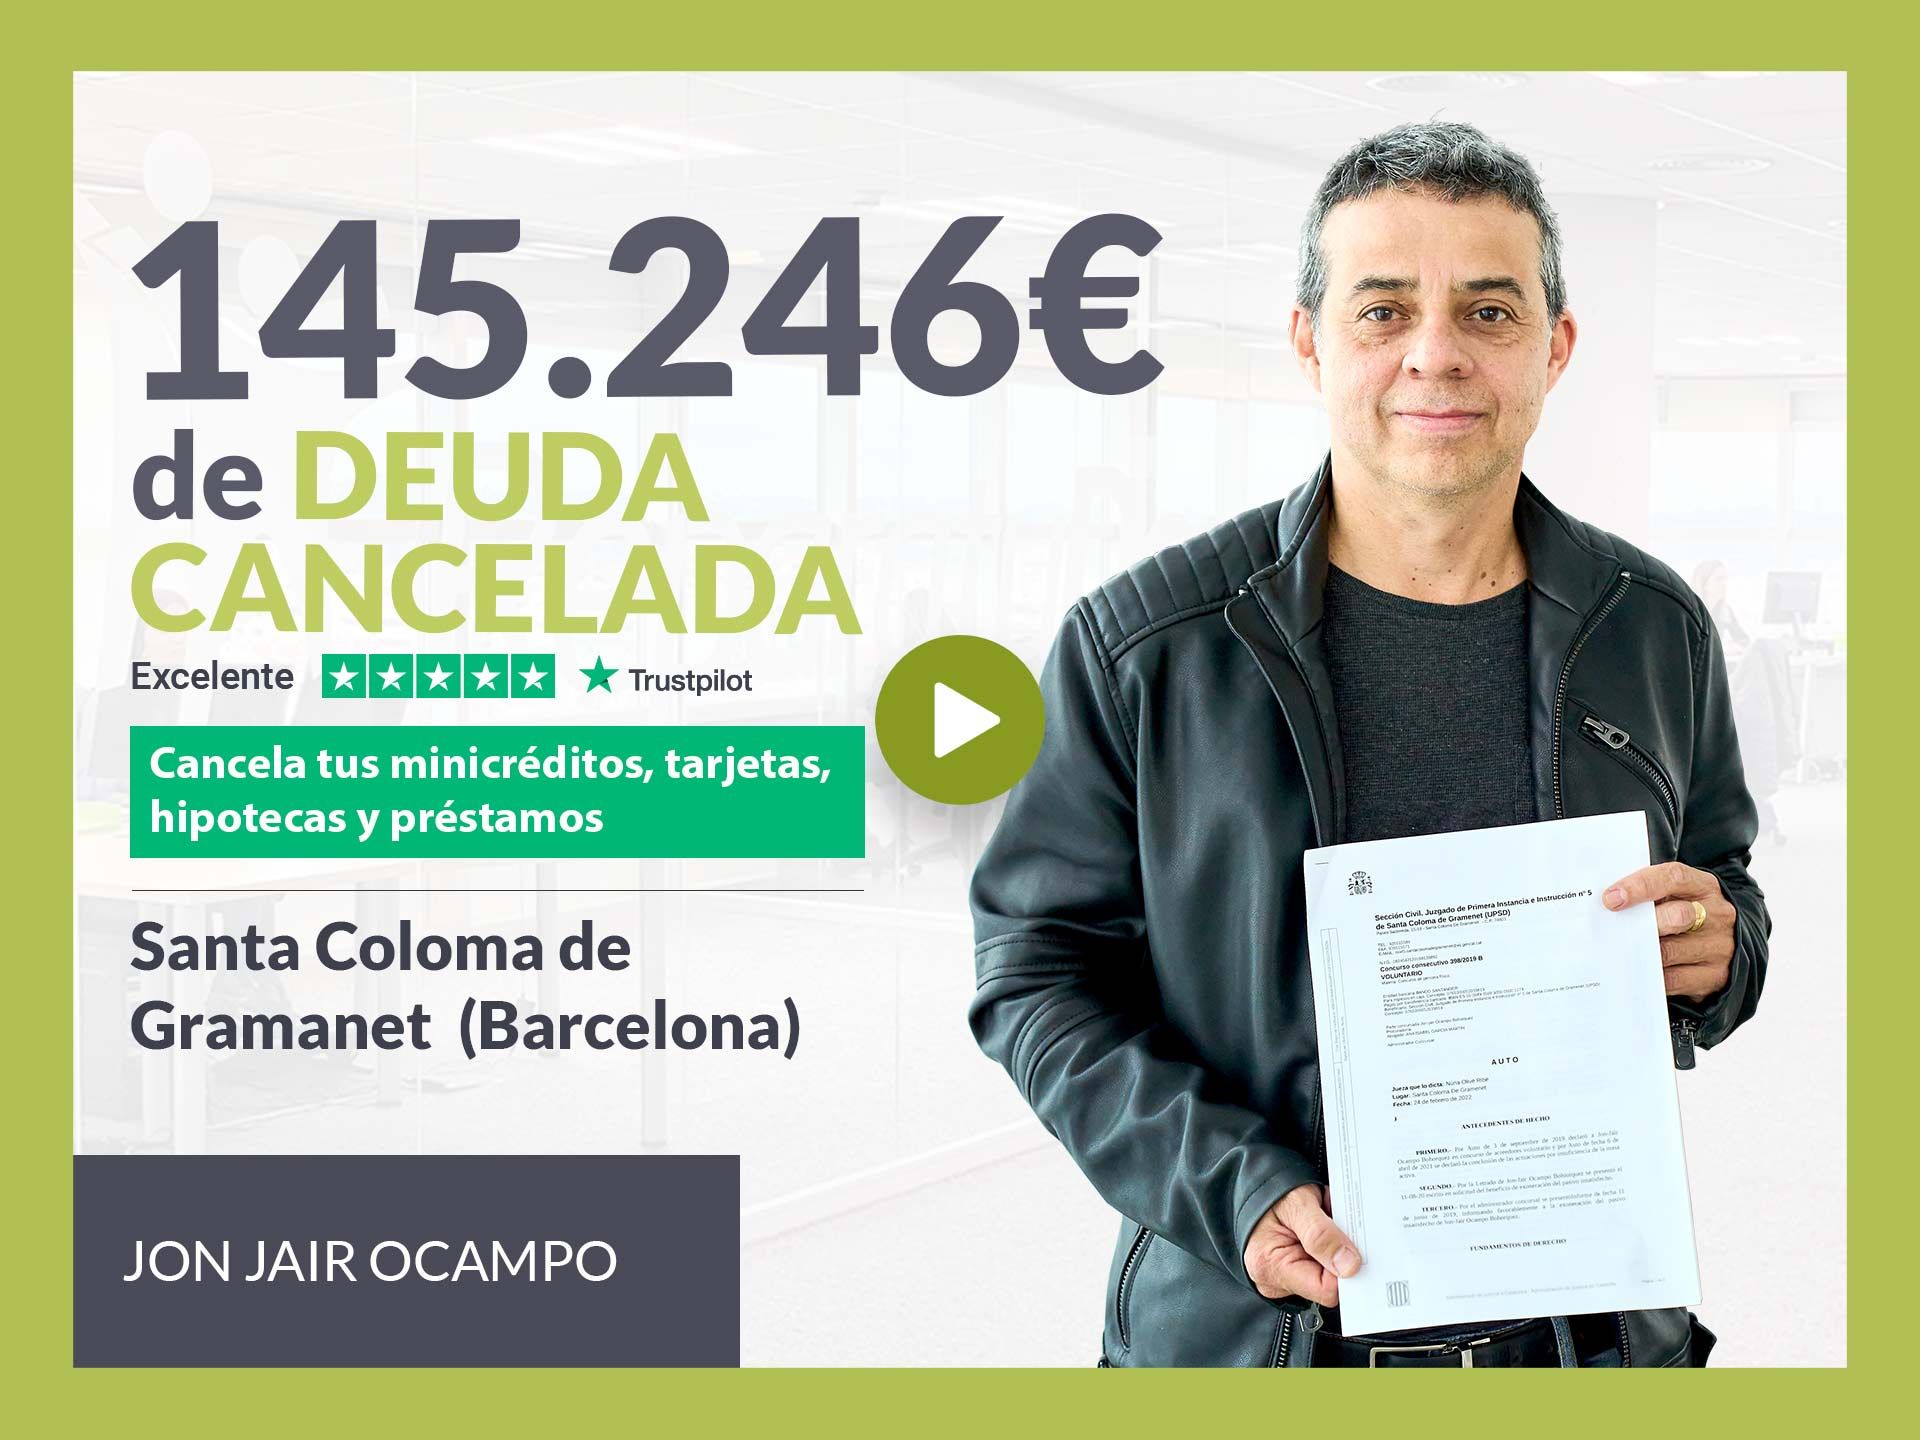 Repara tu Deuda cancela 145.246? en Santa Coloma de Gramanet (Barcelona) con la Ley de Segunda Oportunidad